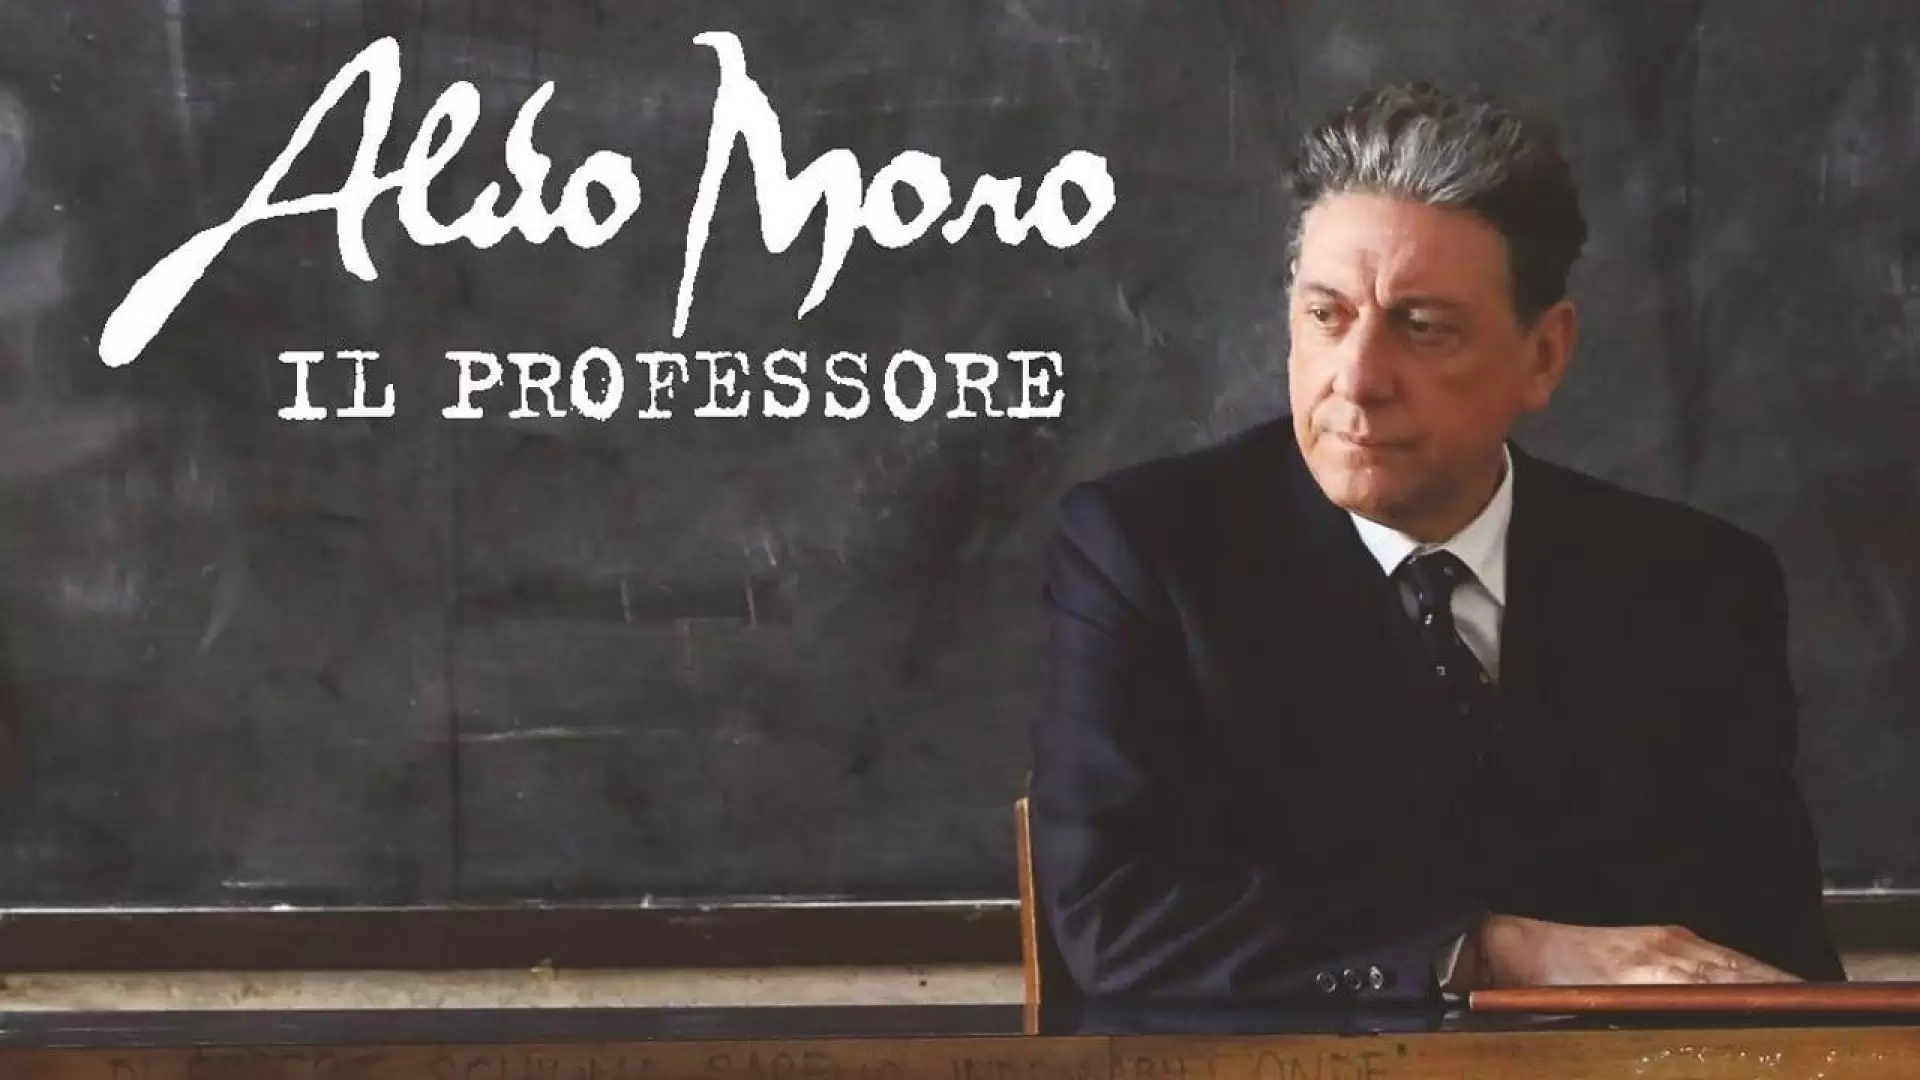 دانلود فیلم Aldo Moro il Professore 2018 (پروفسور آلدو مورو) با تماشای آنلاین